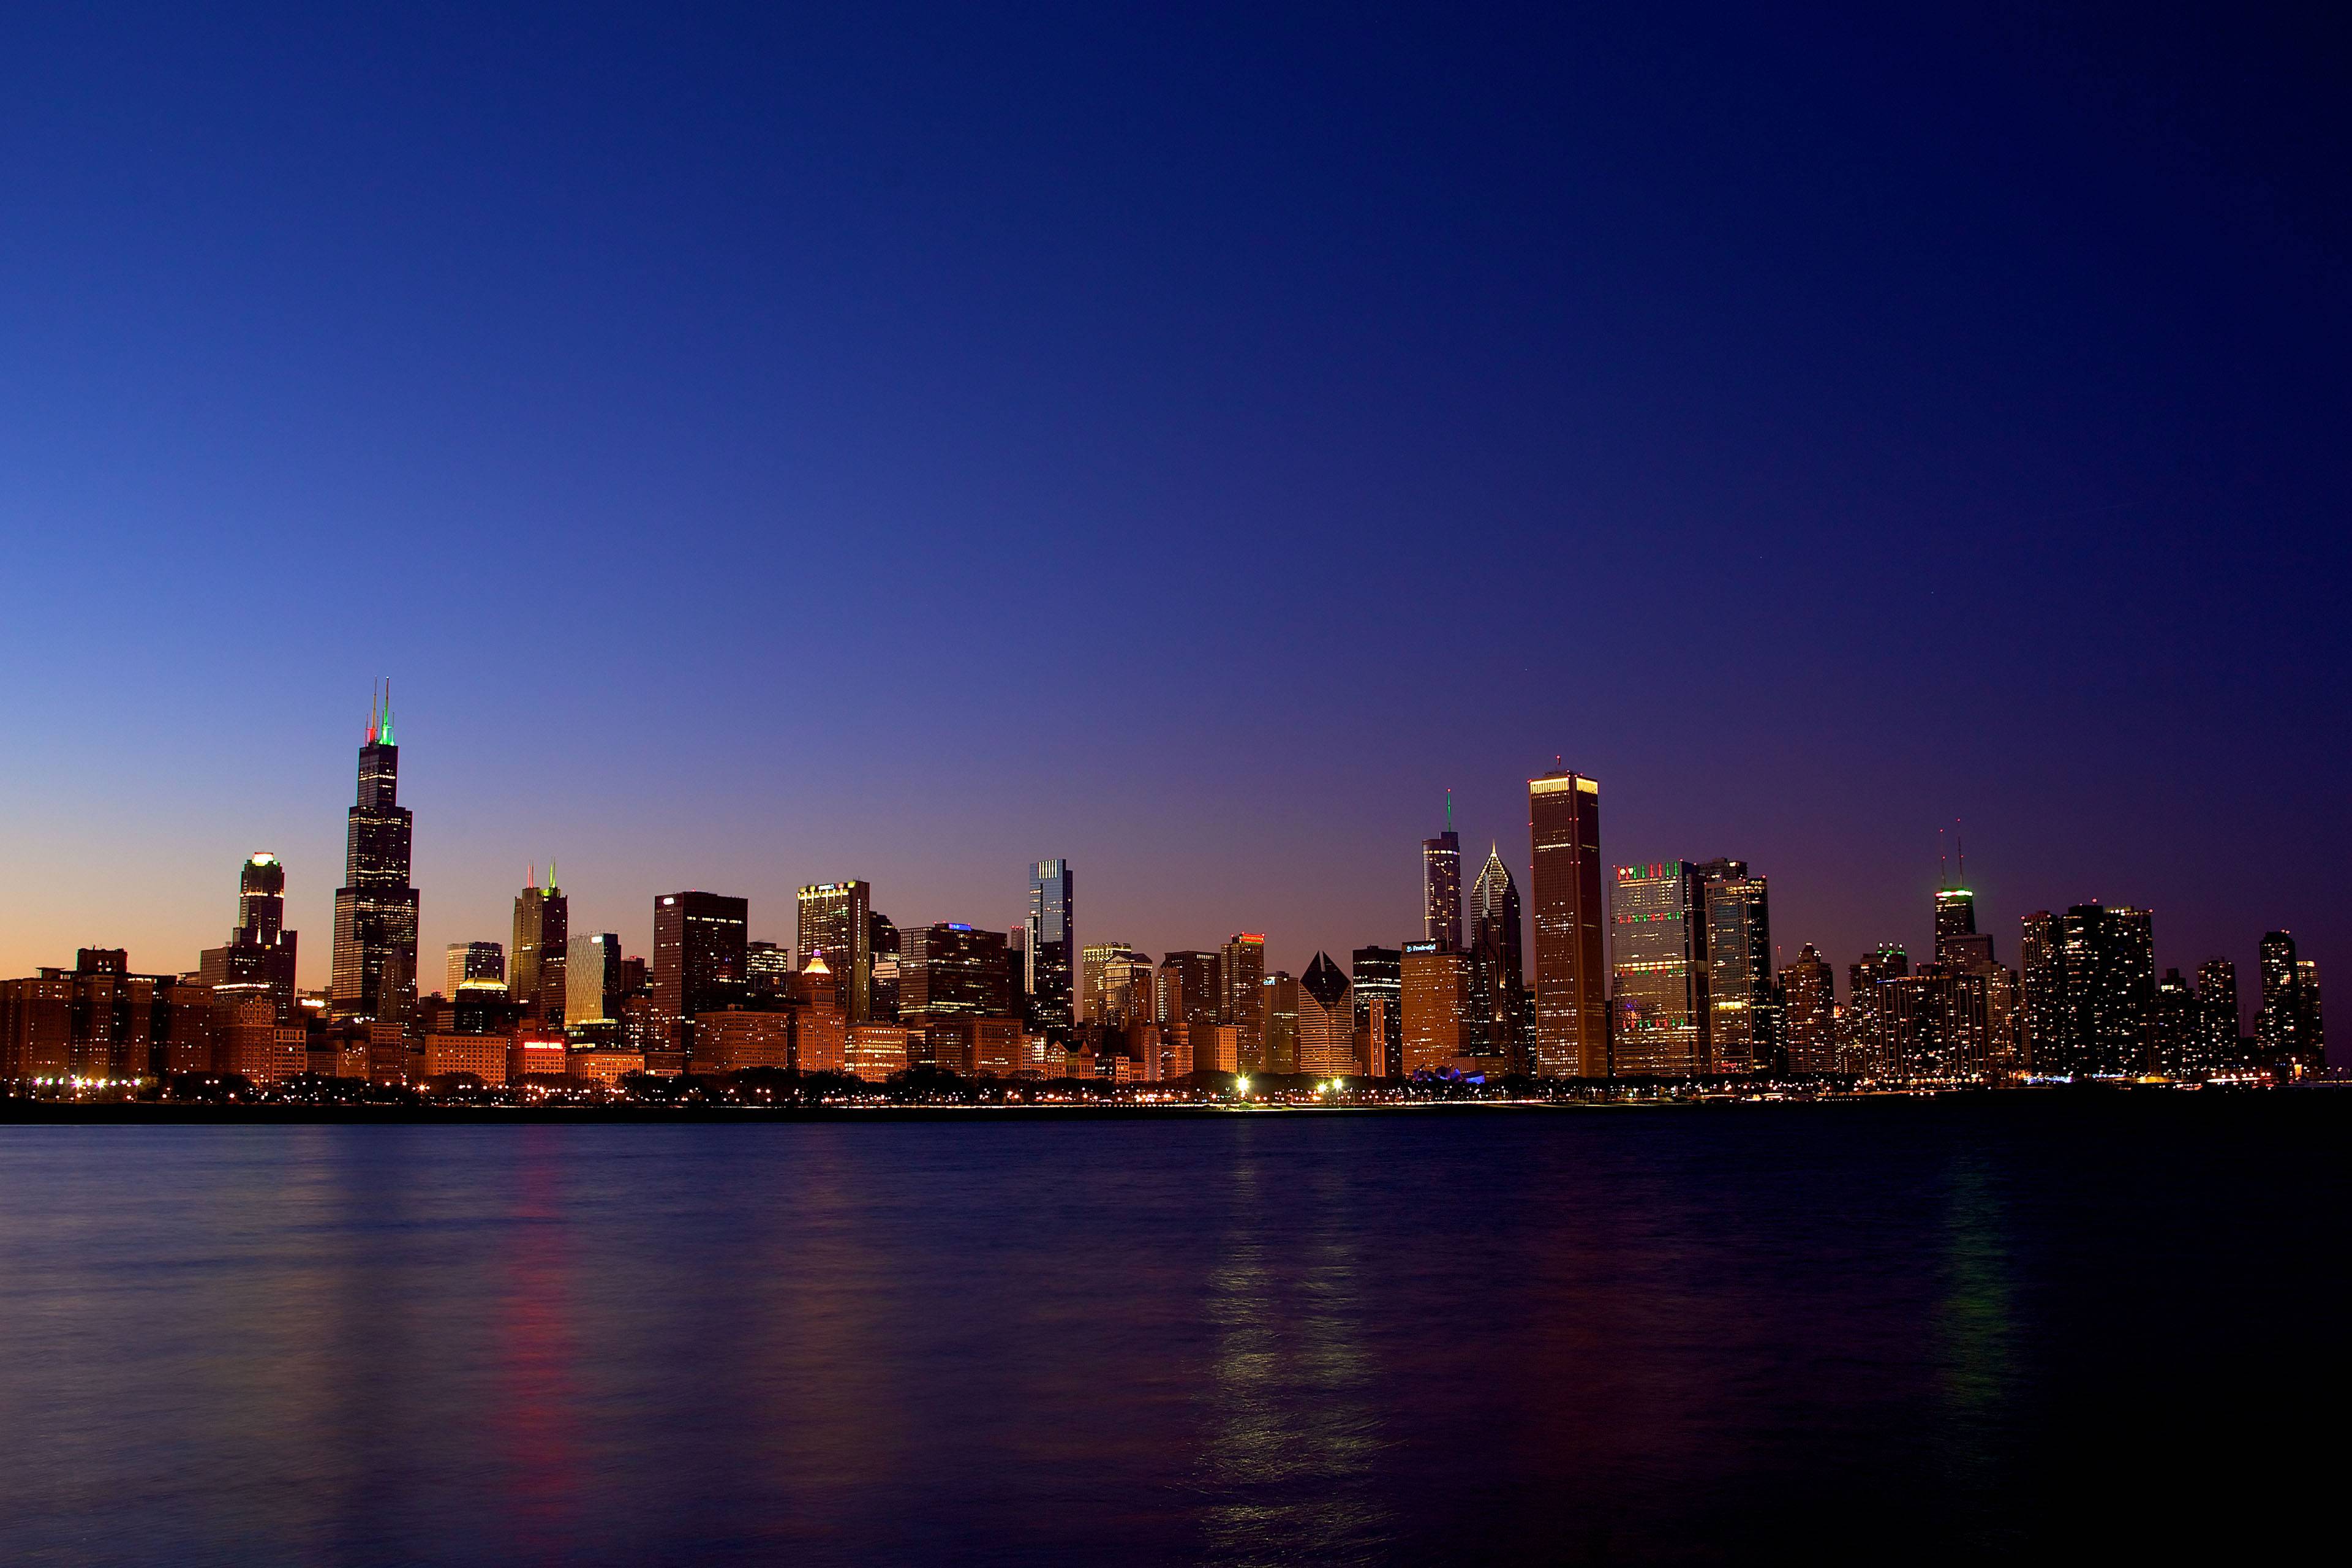 Pinky's Iron Doors City Spotlight: Chicago, Illinois